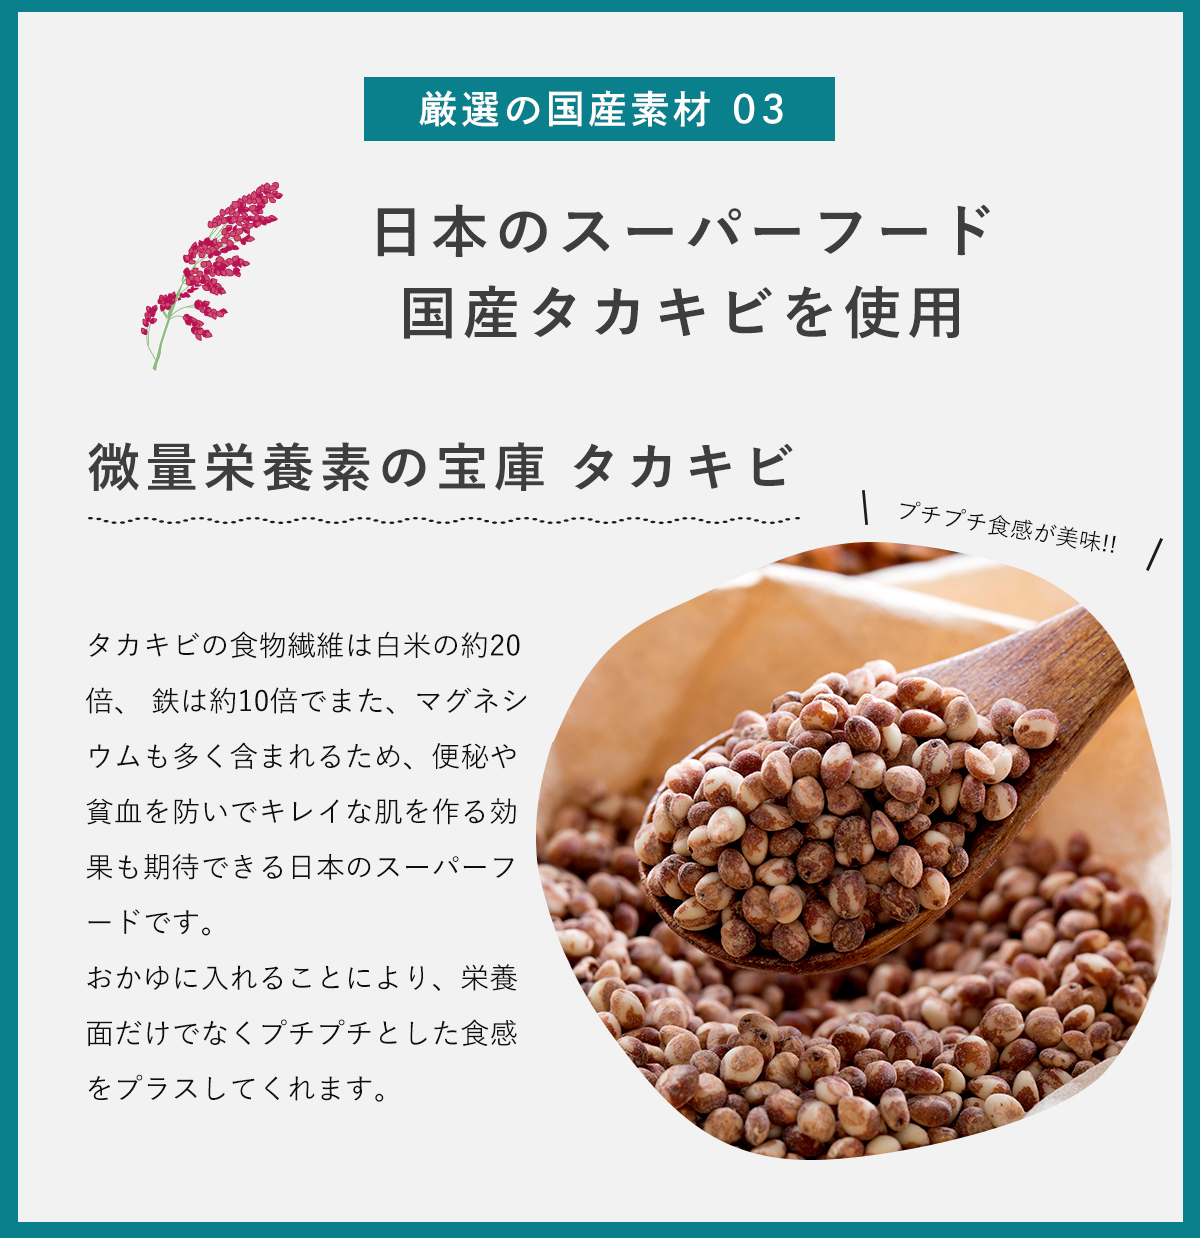 厳選の国産素材3。日本のスーパーフード、国産タカキビ